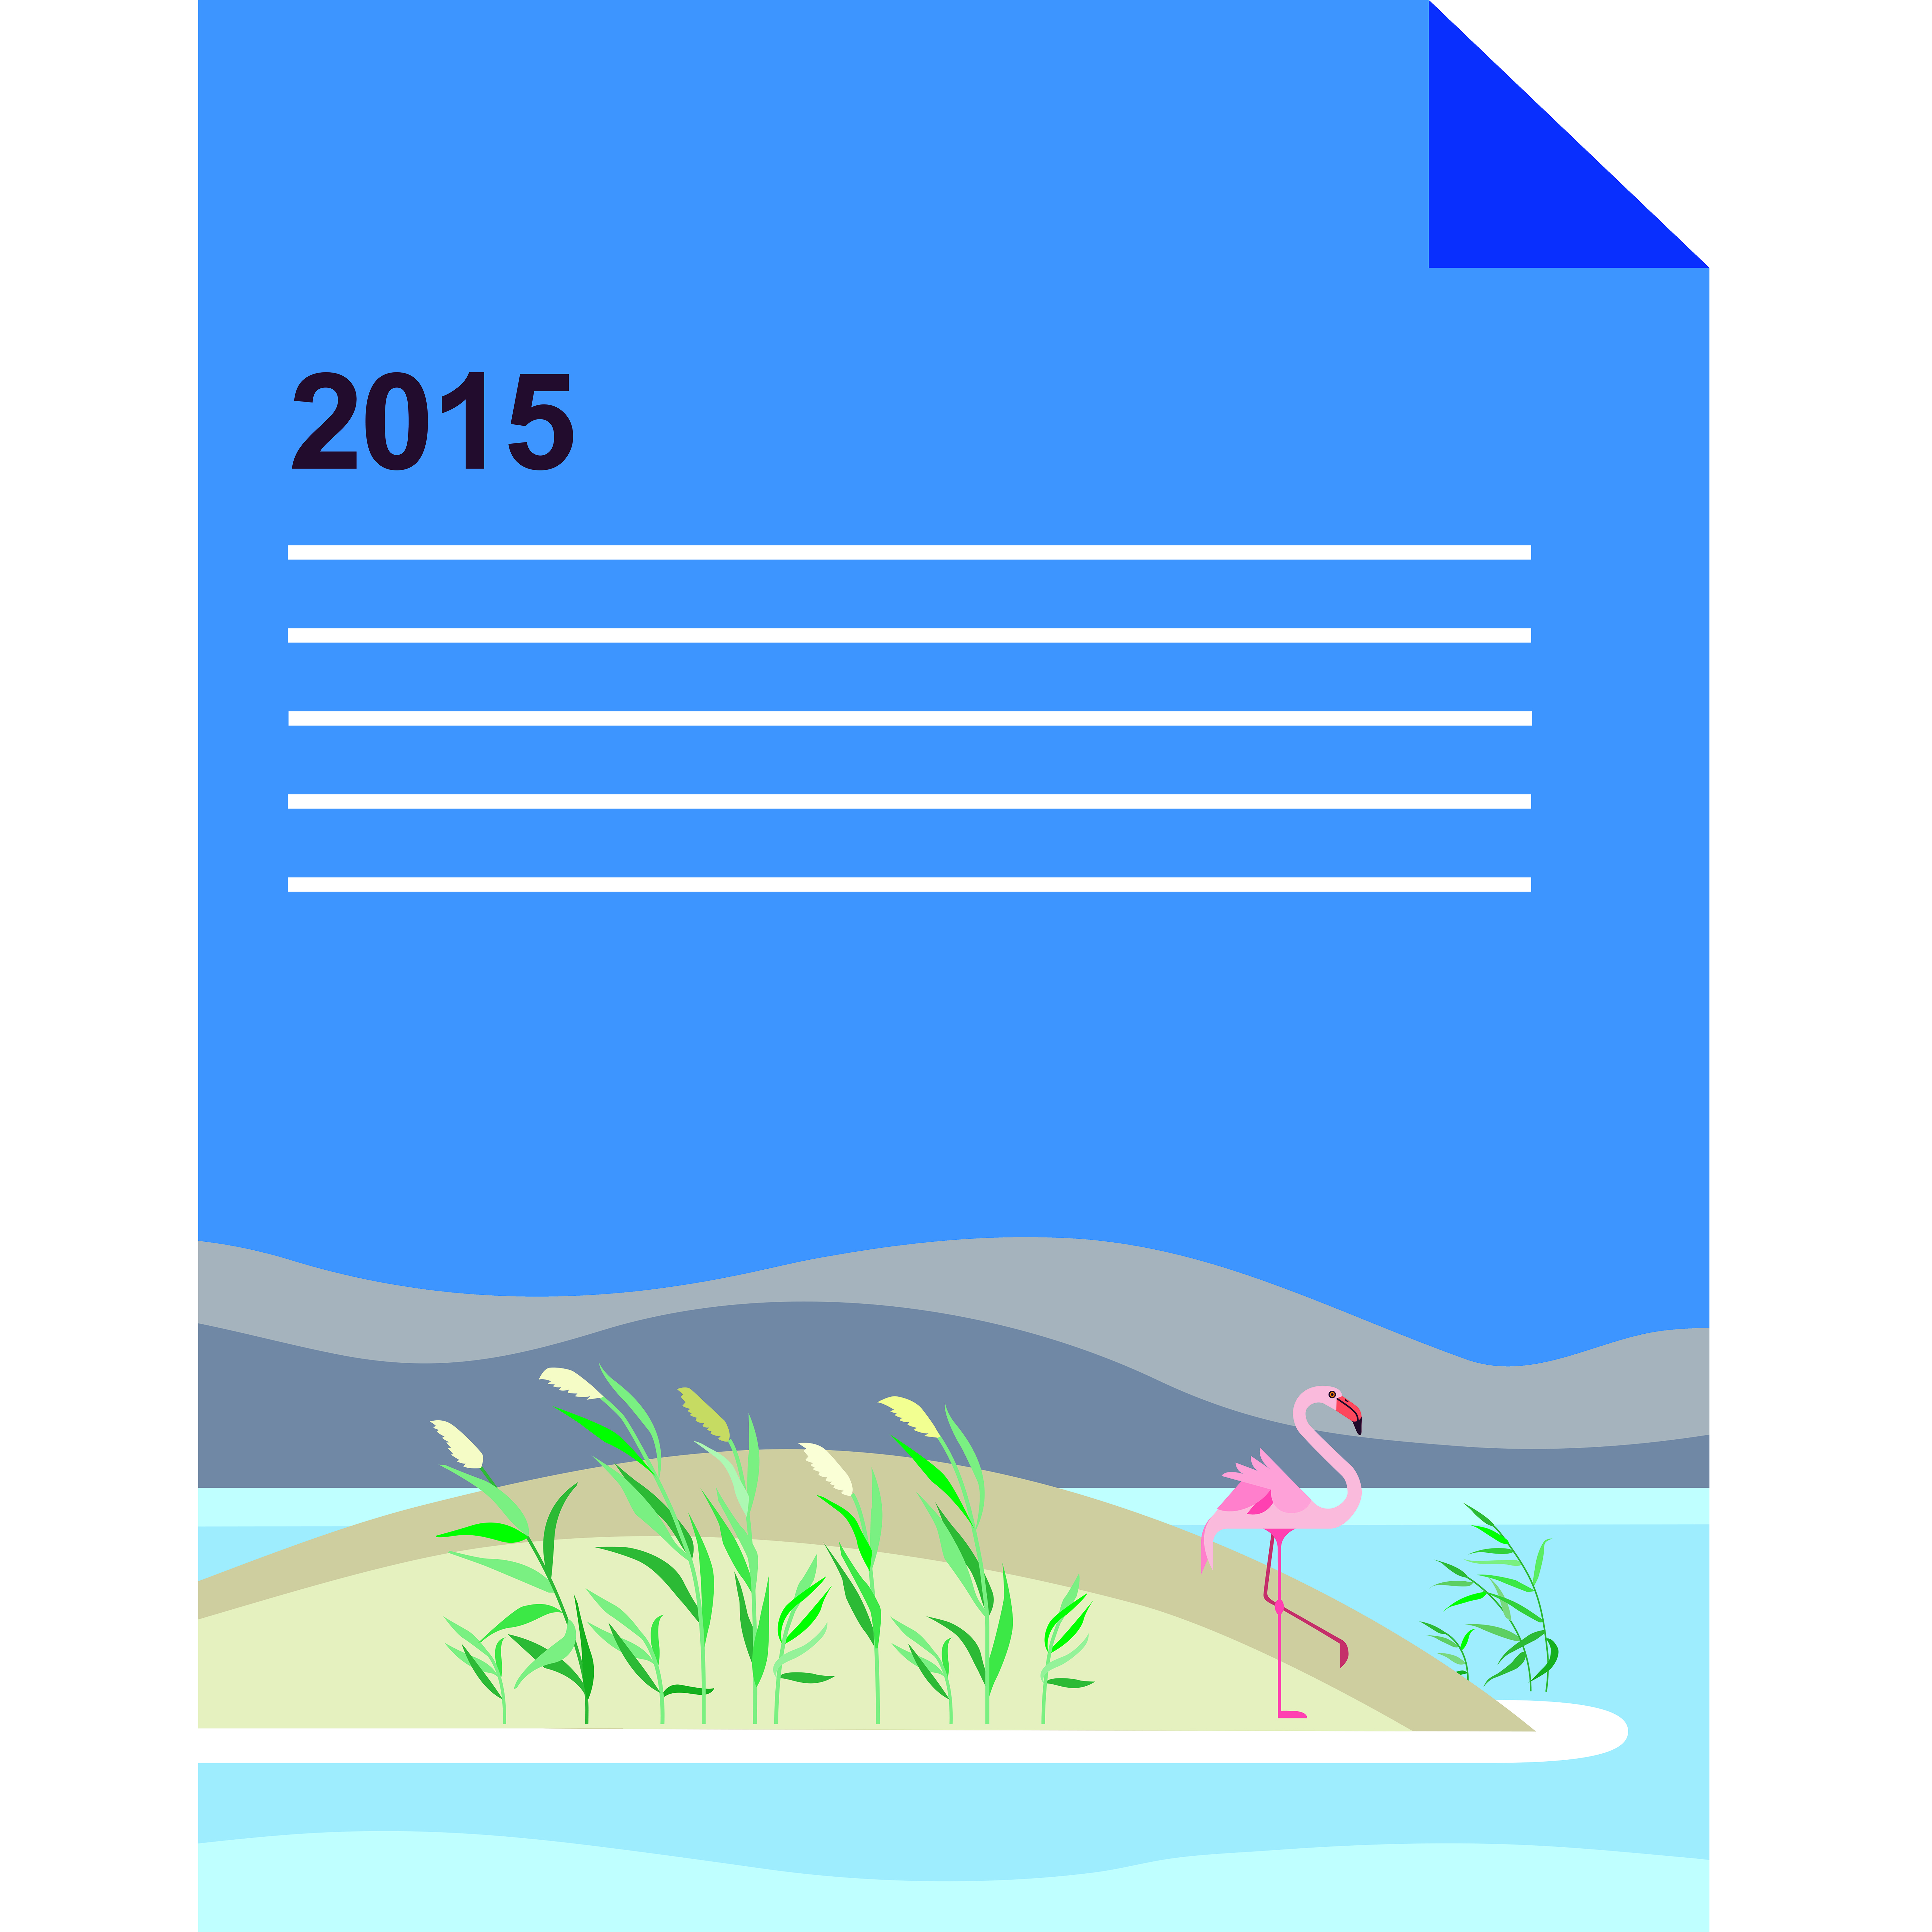 گزارش سالانه طرح در سال 2015